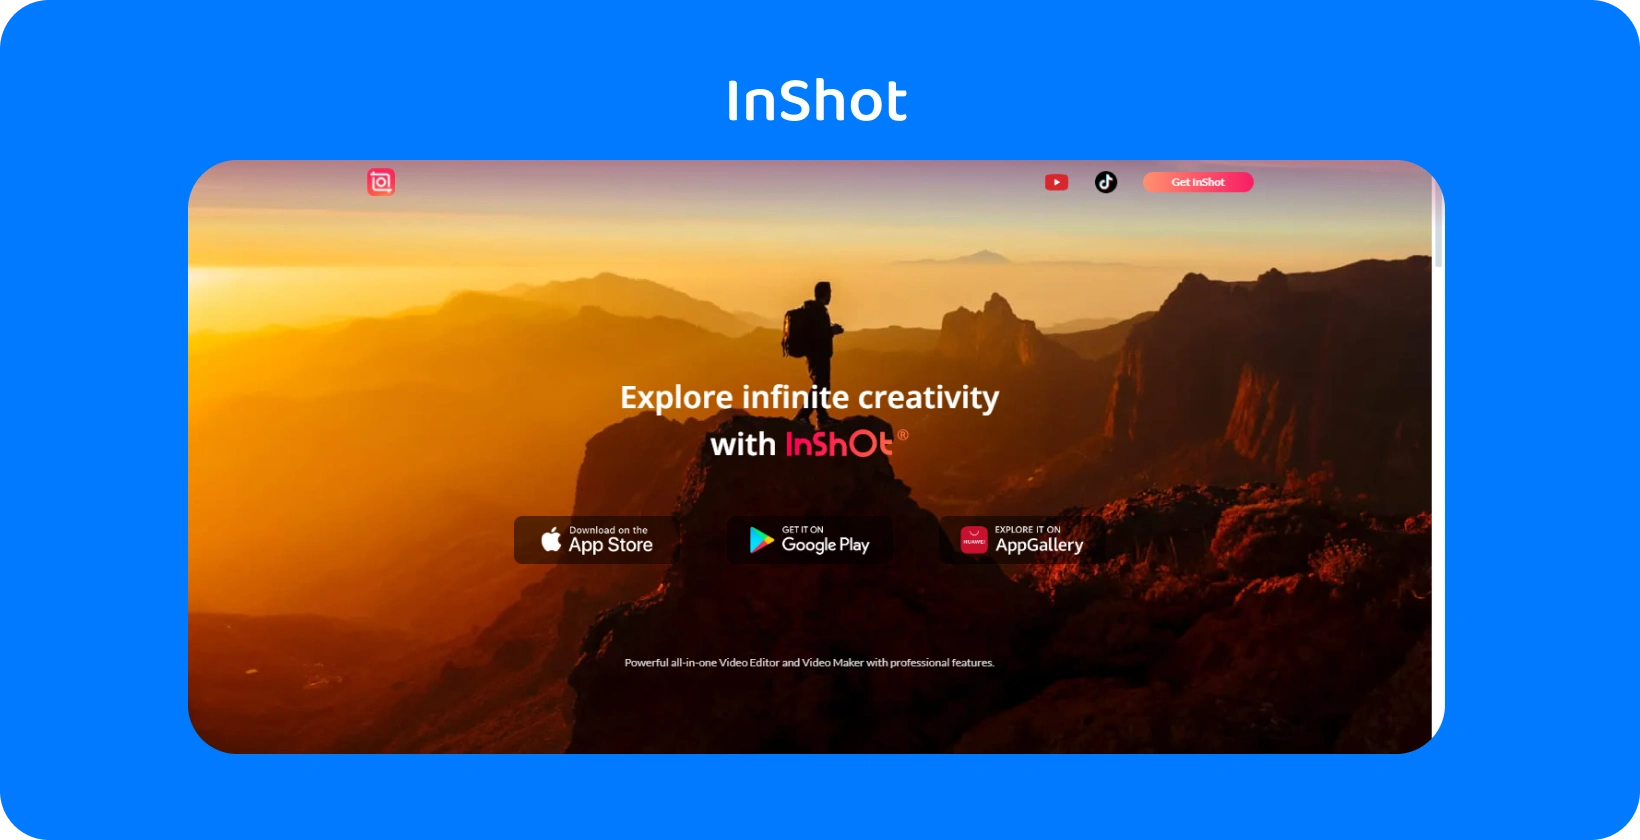 InShot oglas aplikacije s planinarom u suton, simbolizirajući obećanje aplikacije da će istražiti beskonačnu kreativnost u uređivanju videozapisa.
